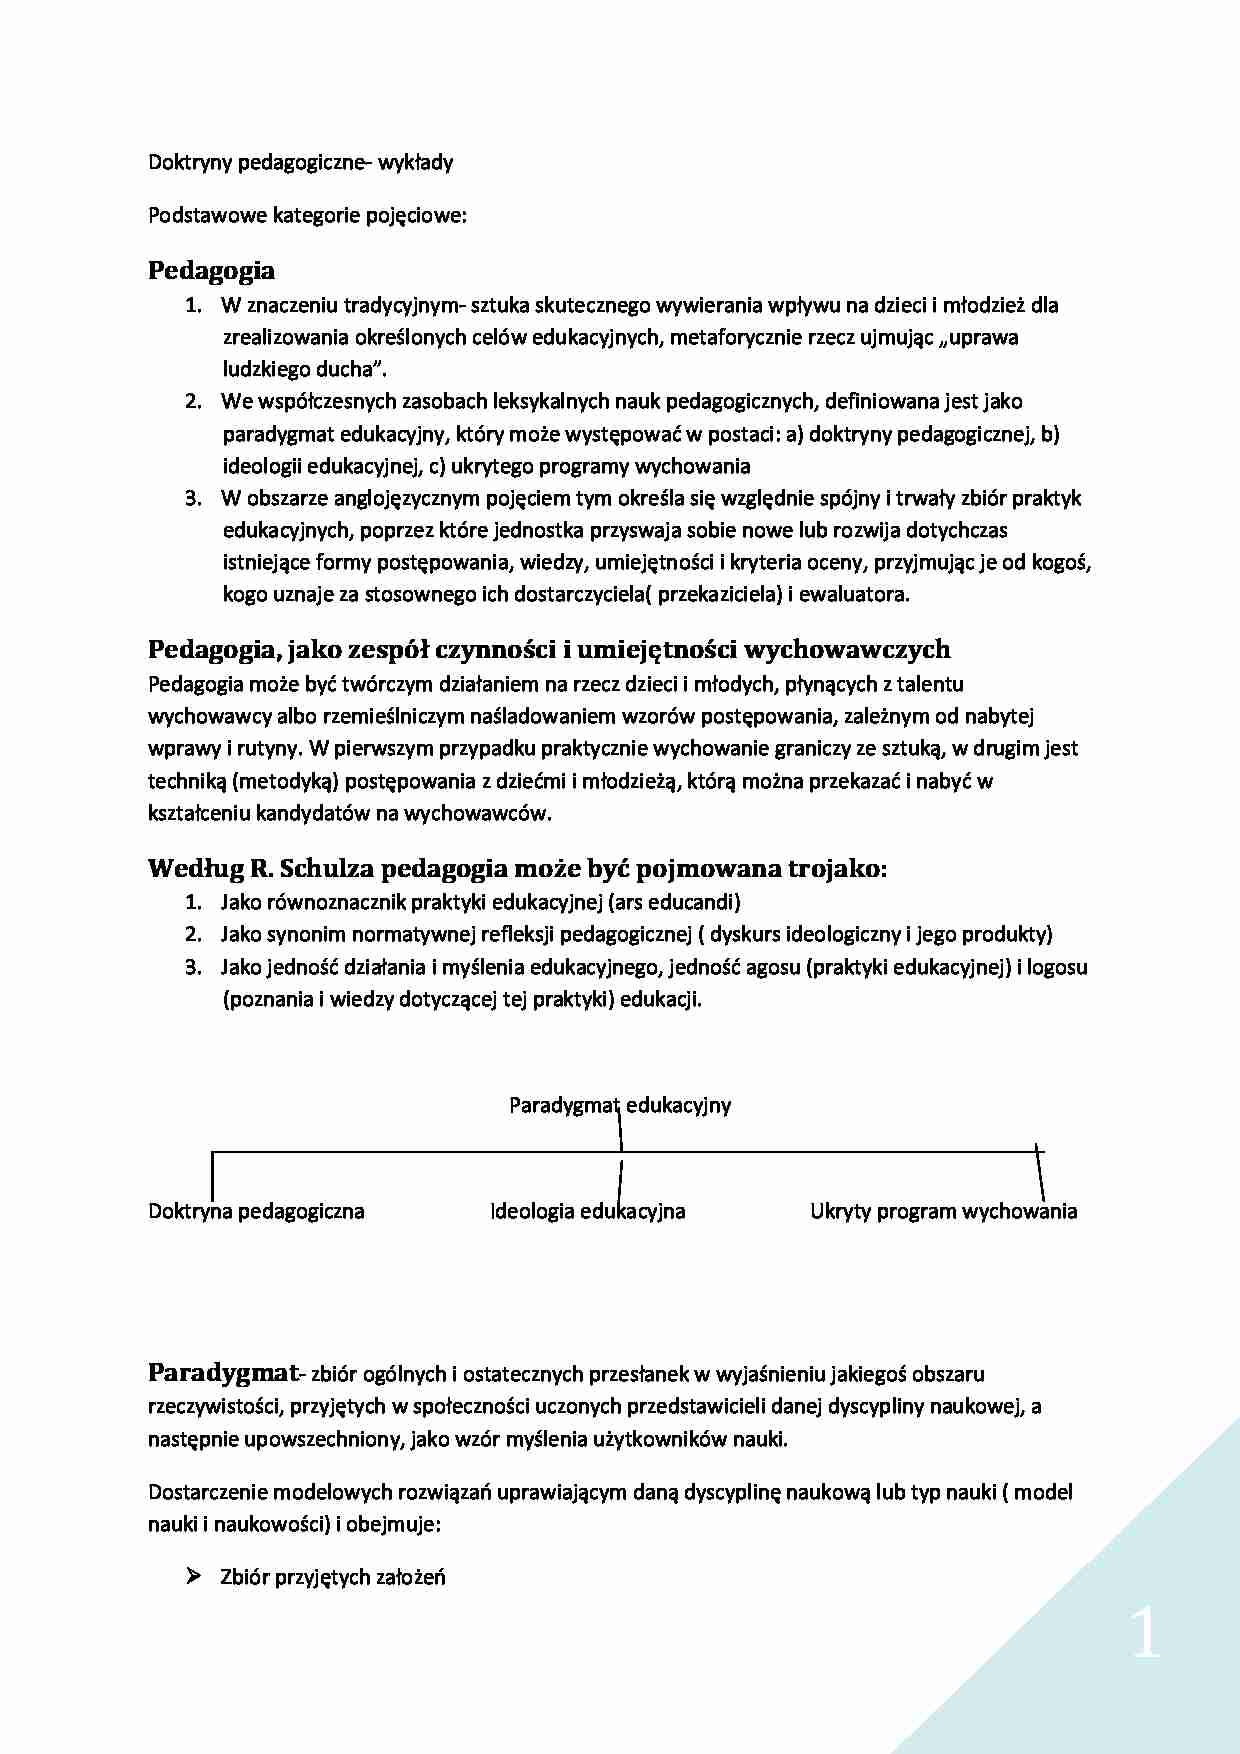 Doktryny pedagogiczne - wykład 1 - strona 1